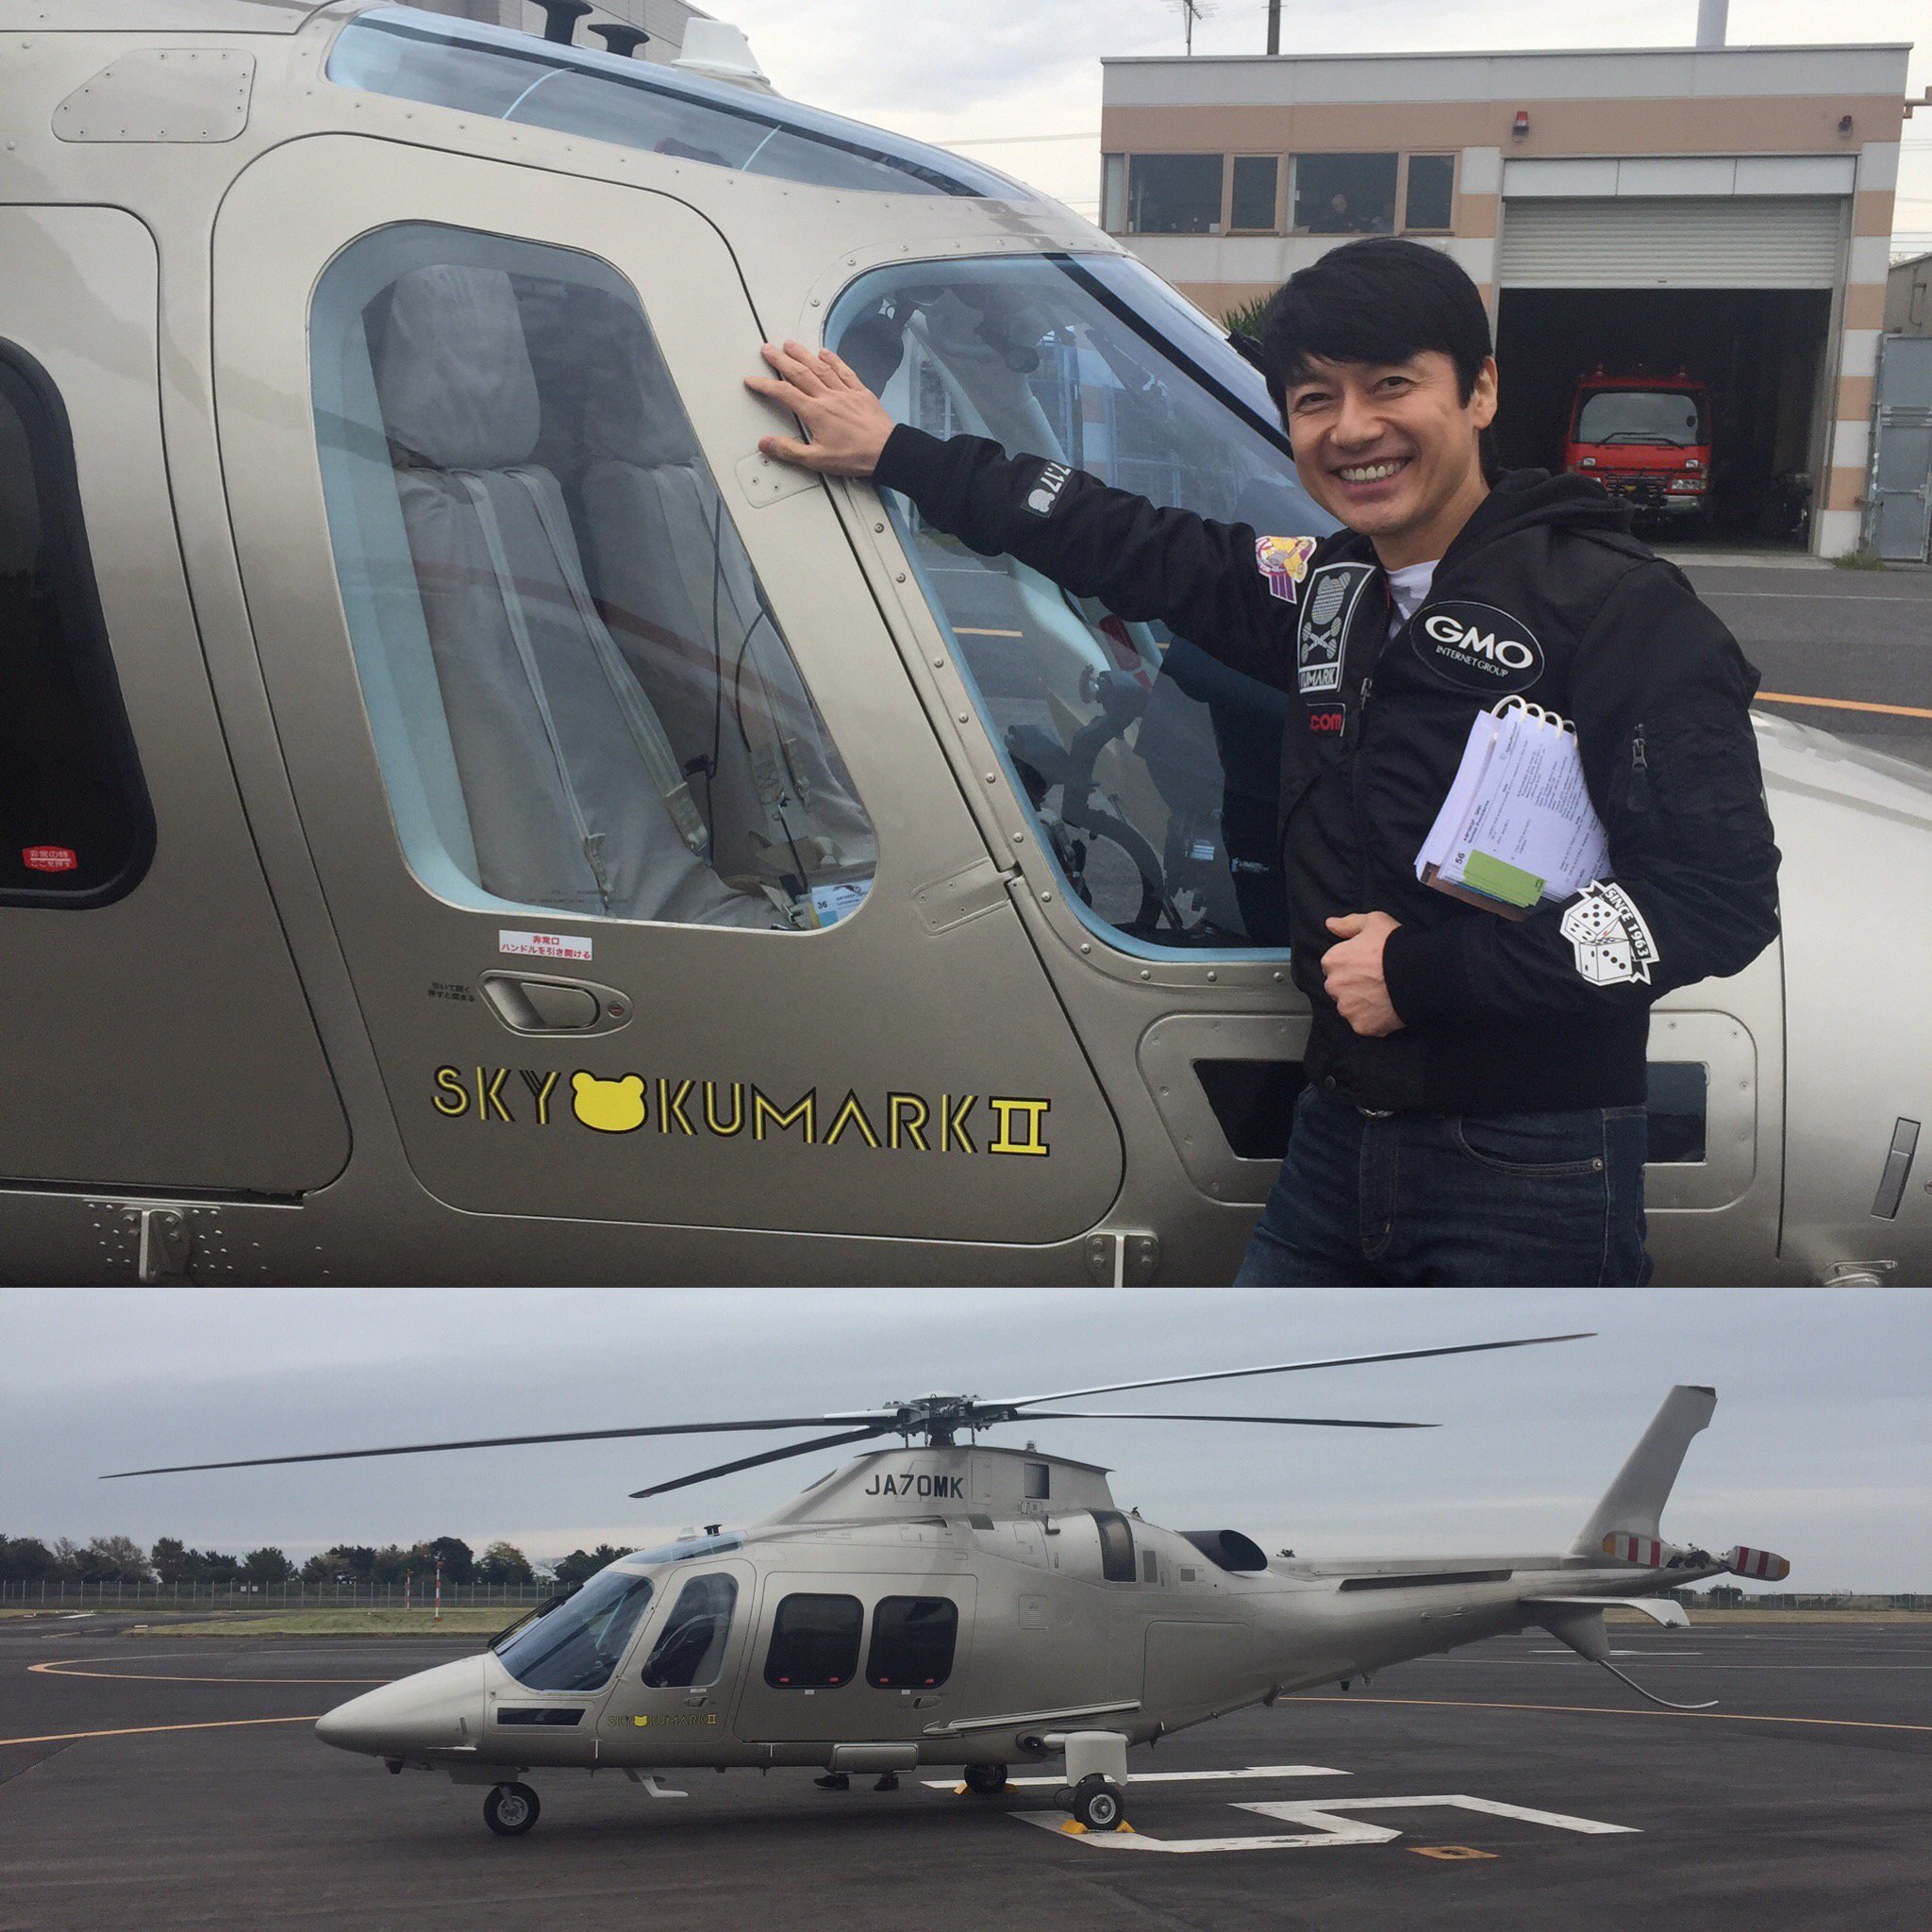 熊谷正寿 Gmo Stop War 操縦免許はまだですが ヘリコプターを買っちゃいました 免許取得作戦 背水の陣です 笑 T Co Brnwx05me8 T Co Mjvcxdupfq Twitter